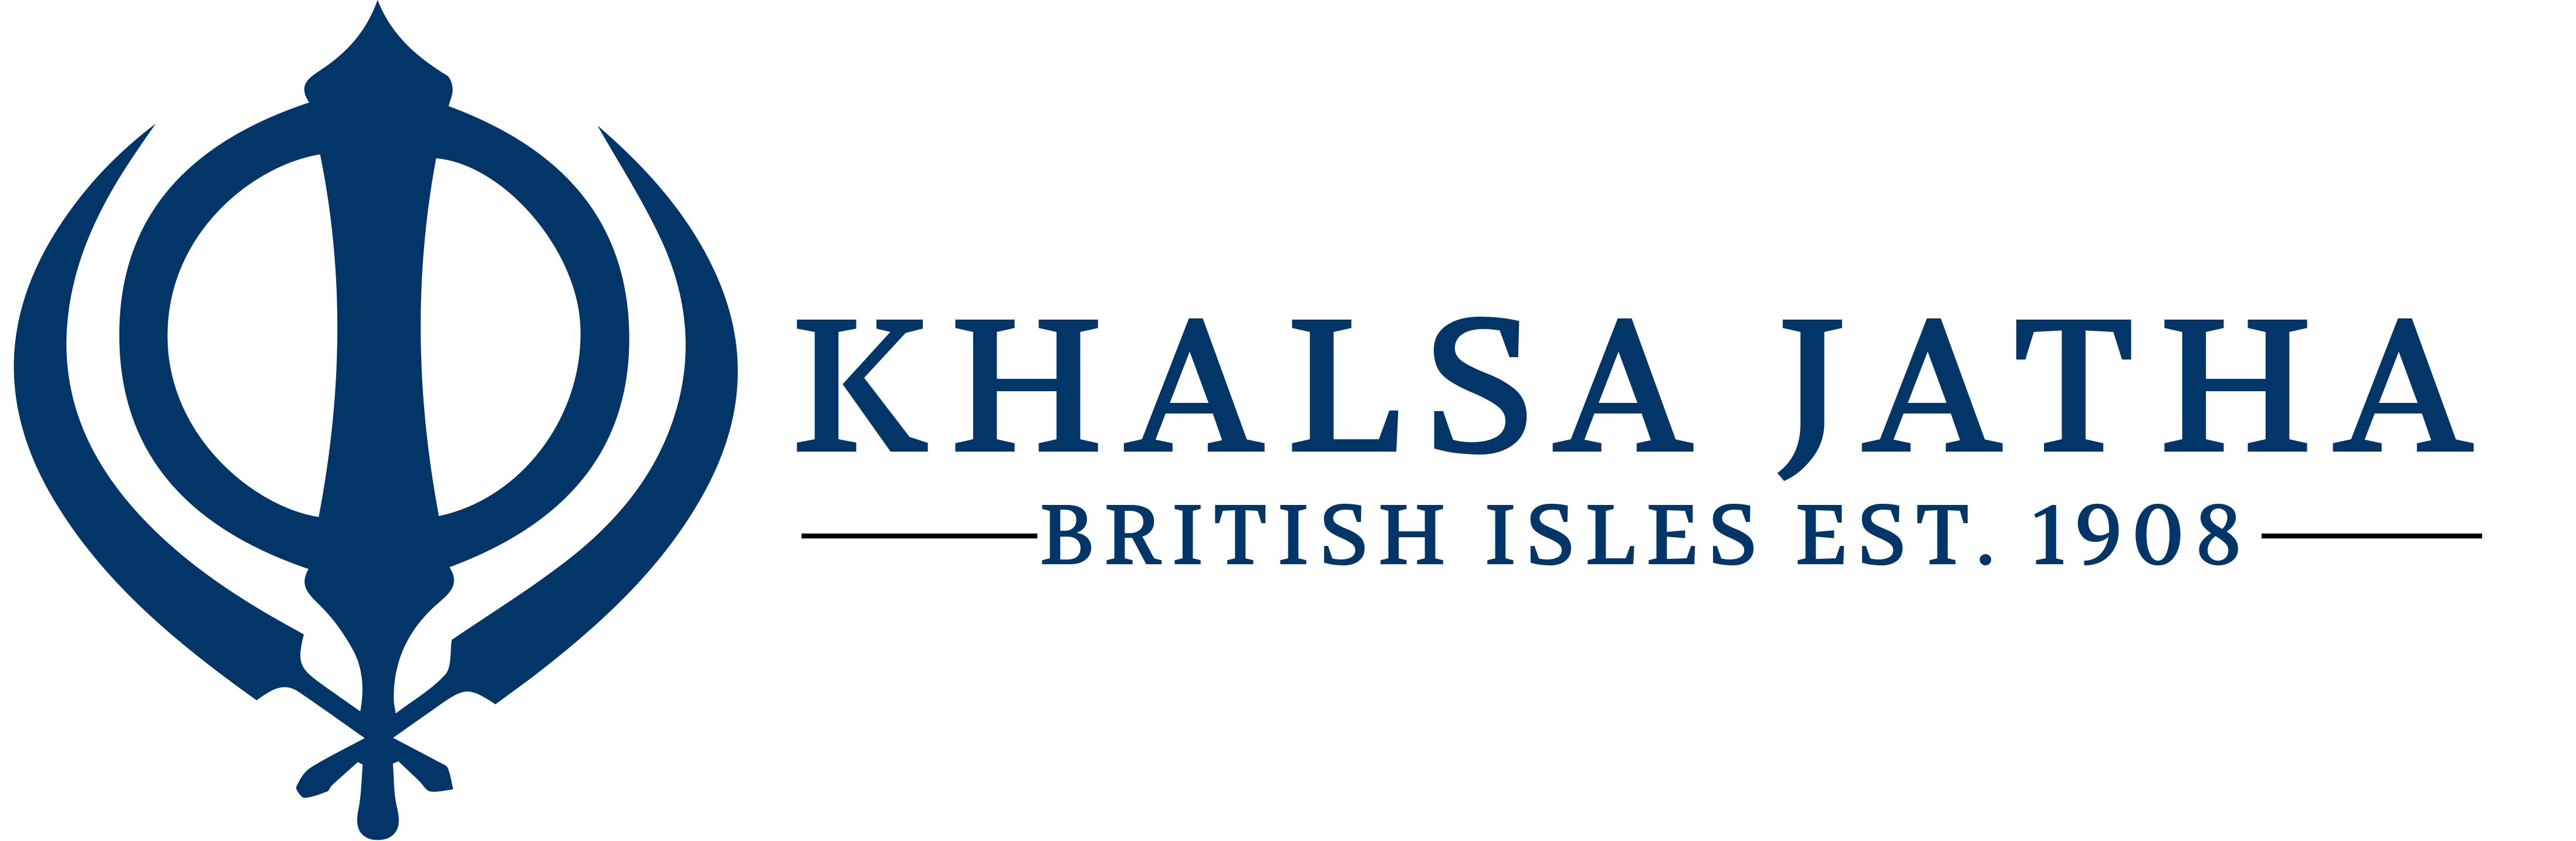 The Central Gurdwara (British Isles) London Khalsa Jatha logo